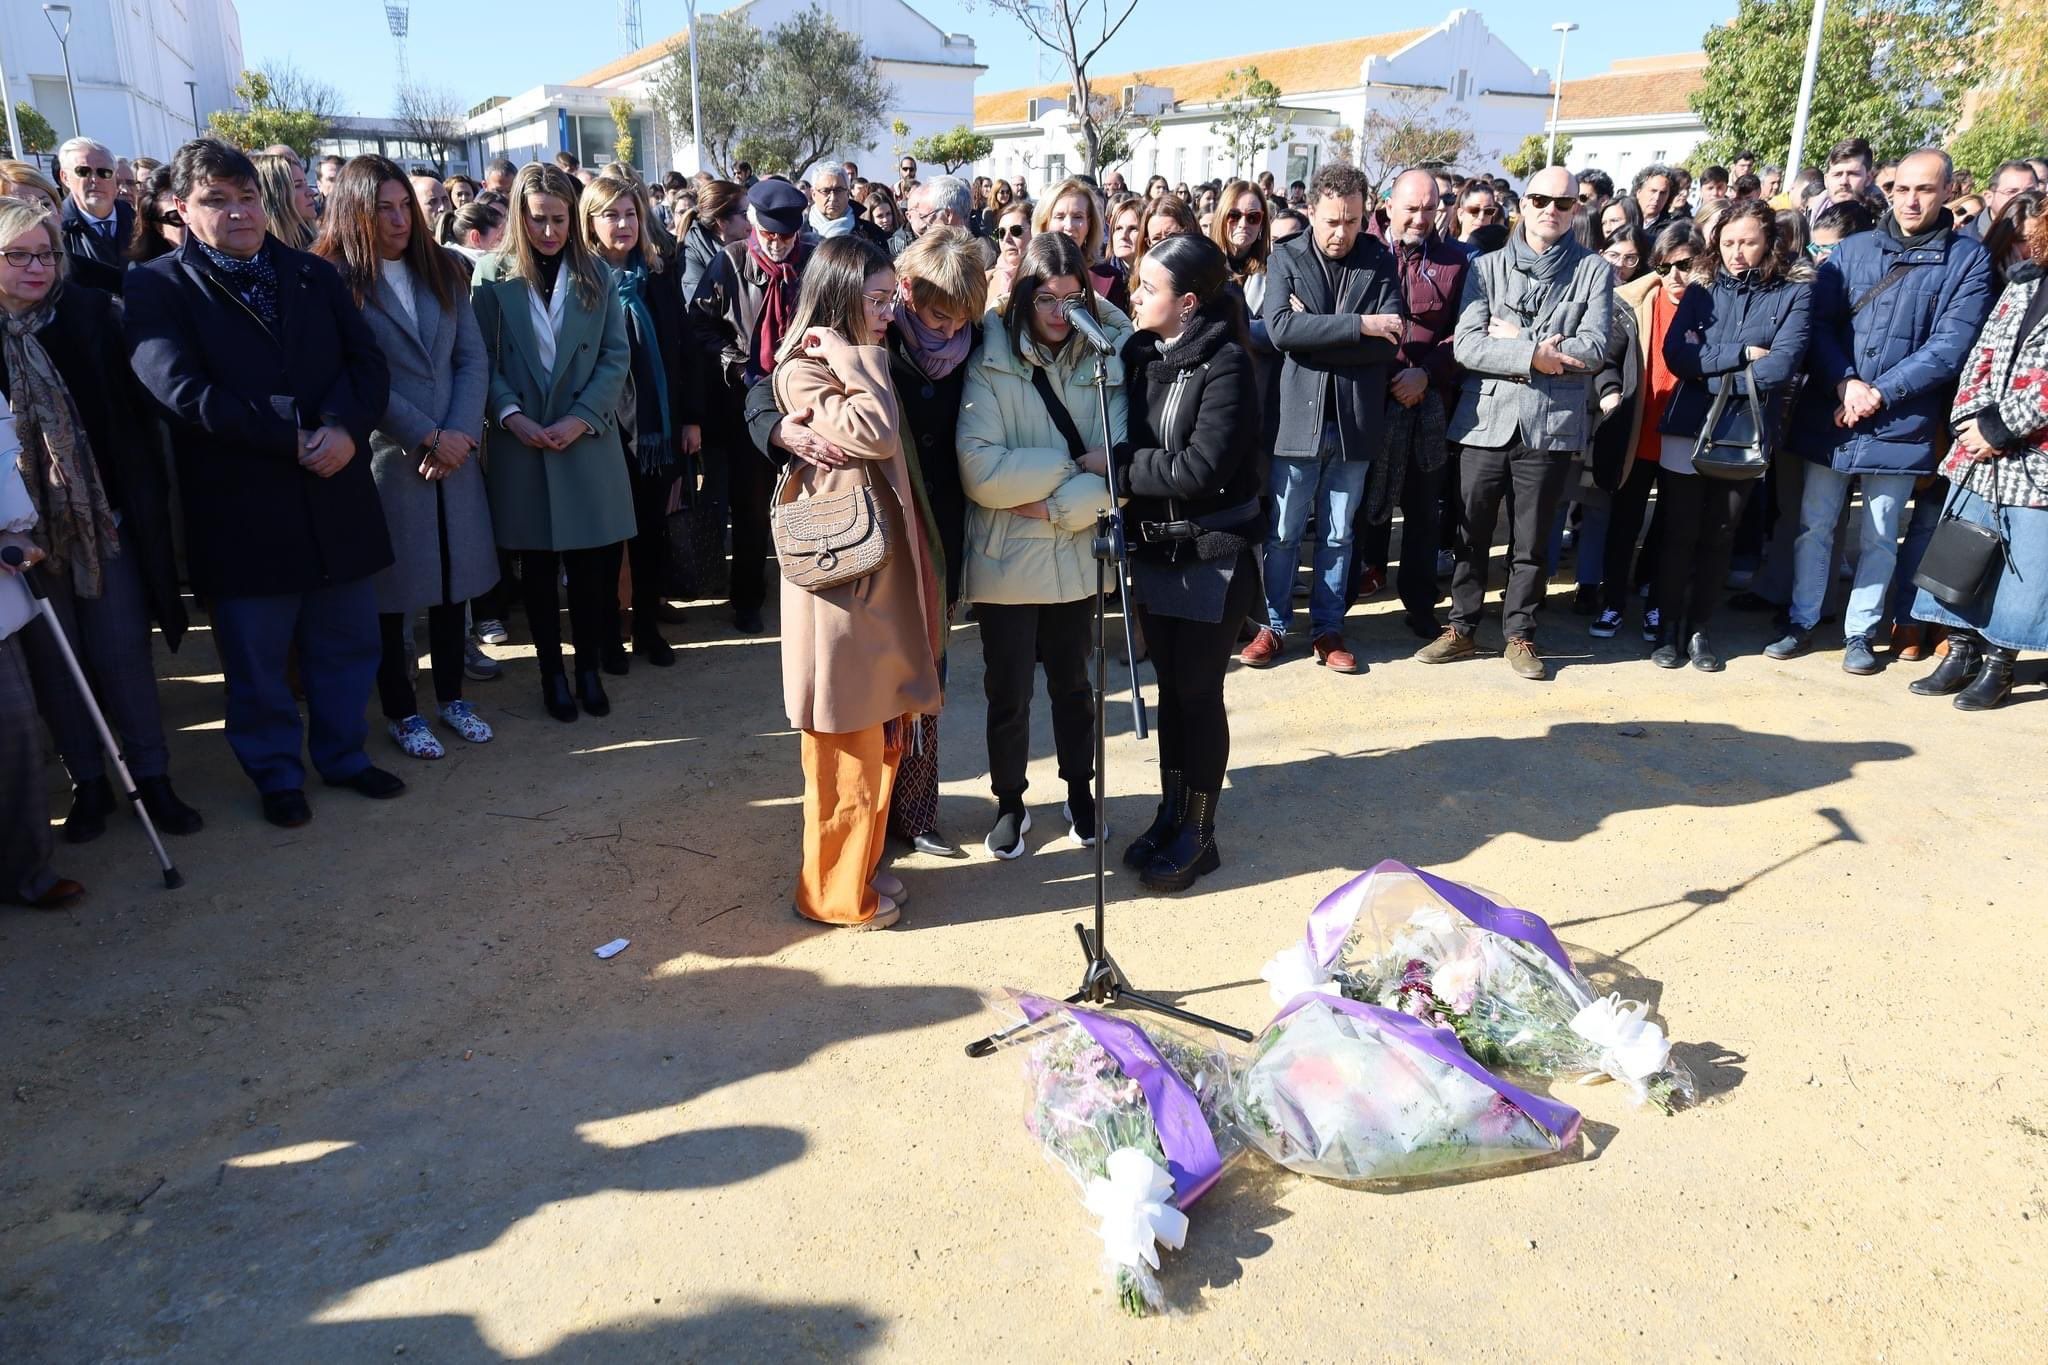 Compañeros y profesores de Daniel, Sara y Andrea, en el homenaje en Huelva a los tres jóvenes fallecidos.